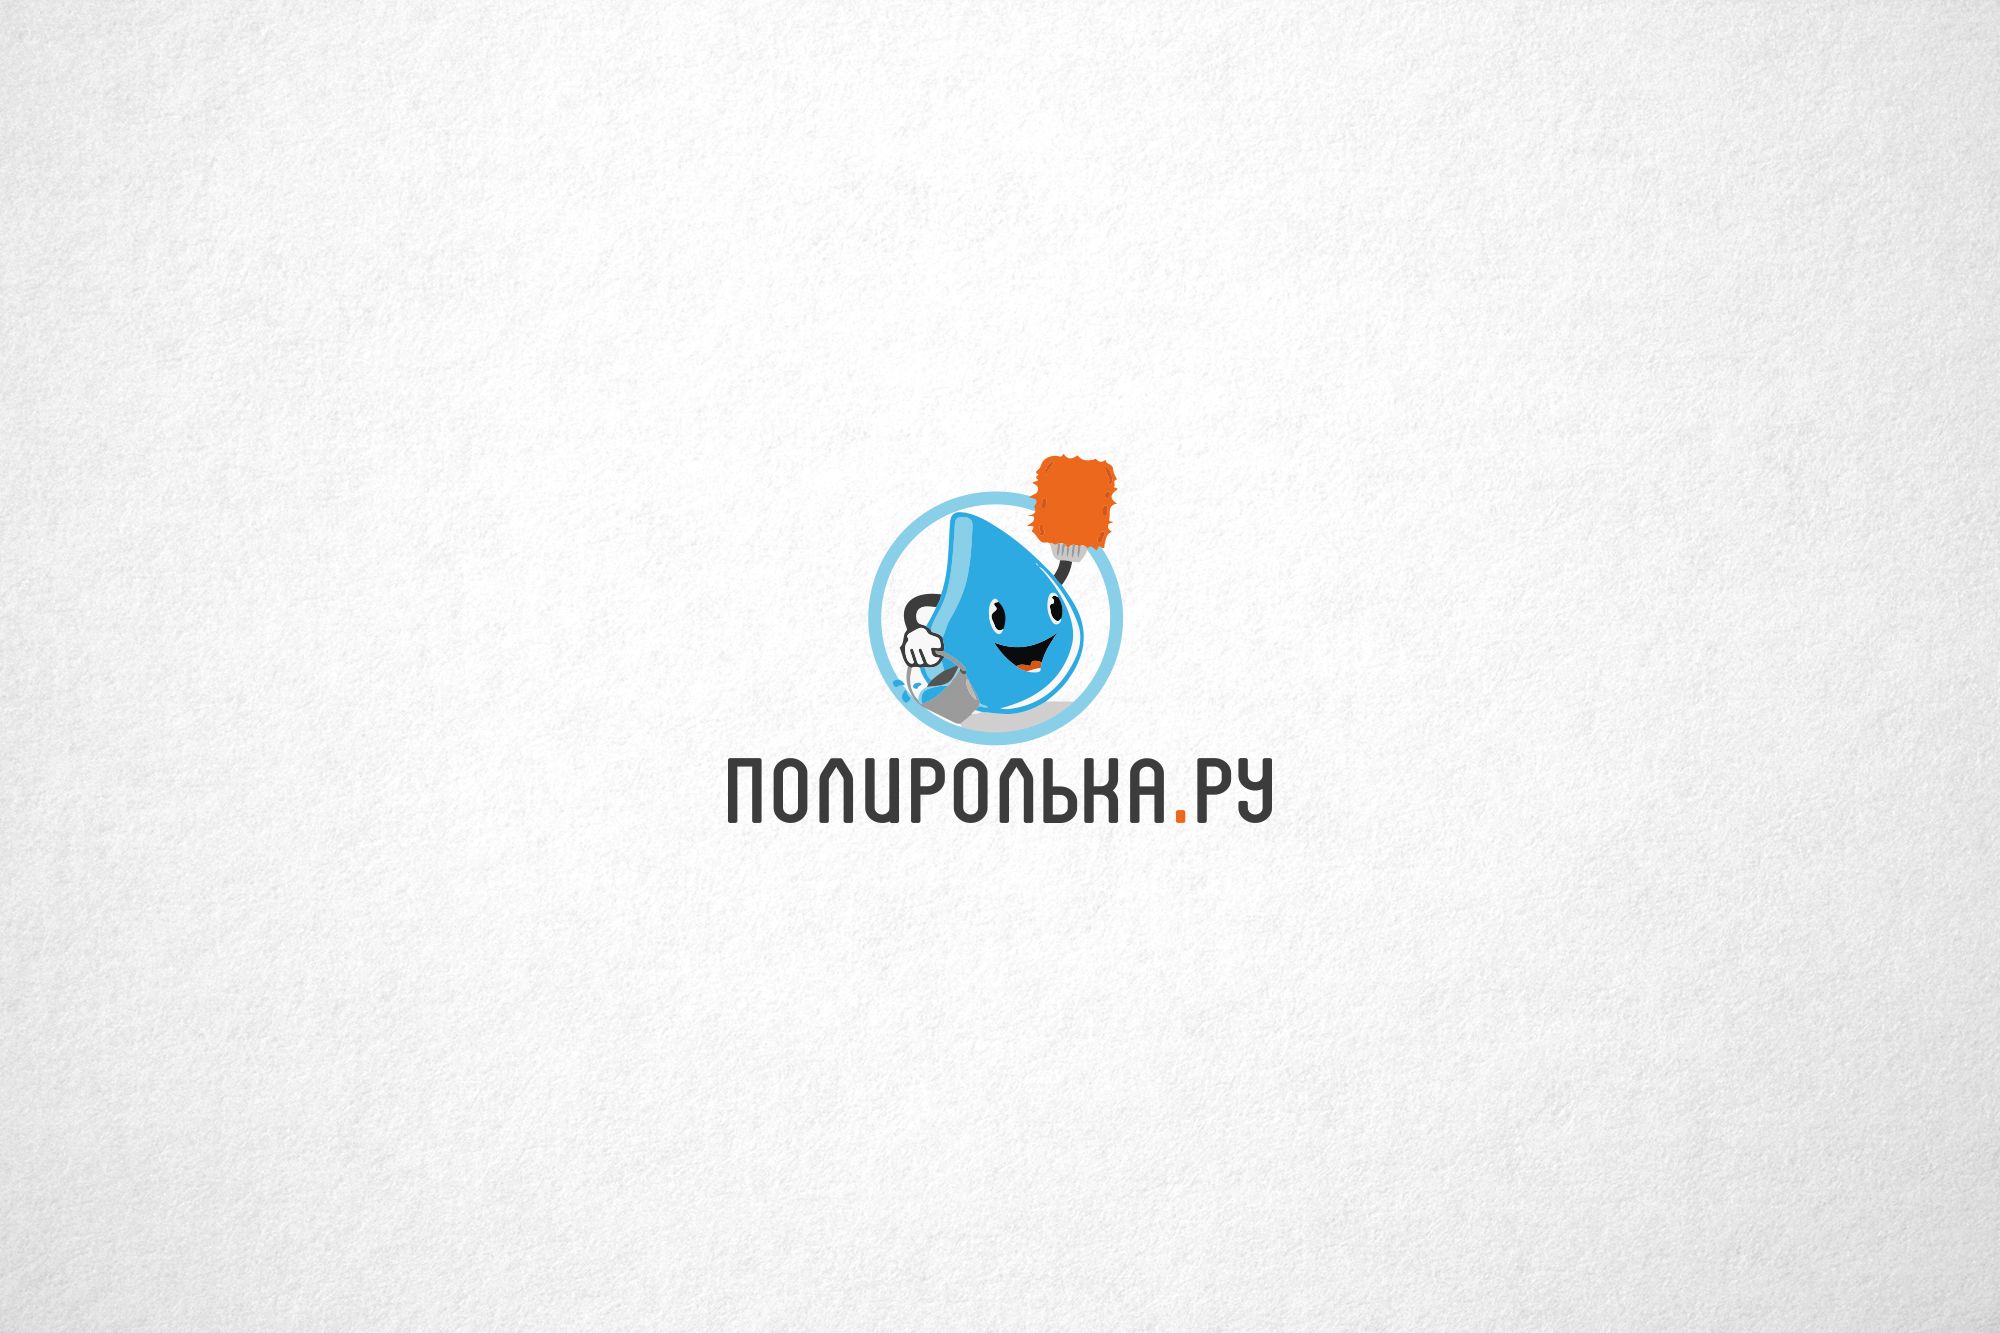 Логотип для интернет-магазина Полиролька.ру - дизайнер funkielevis